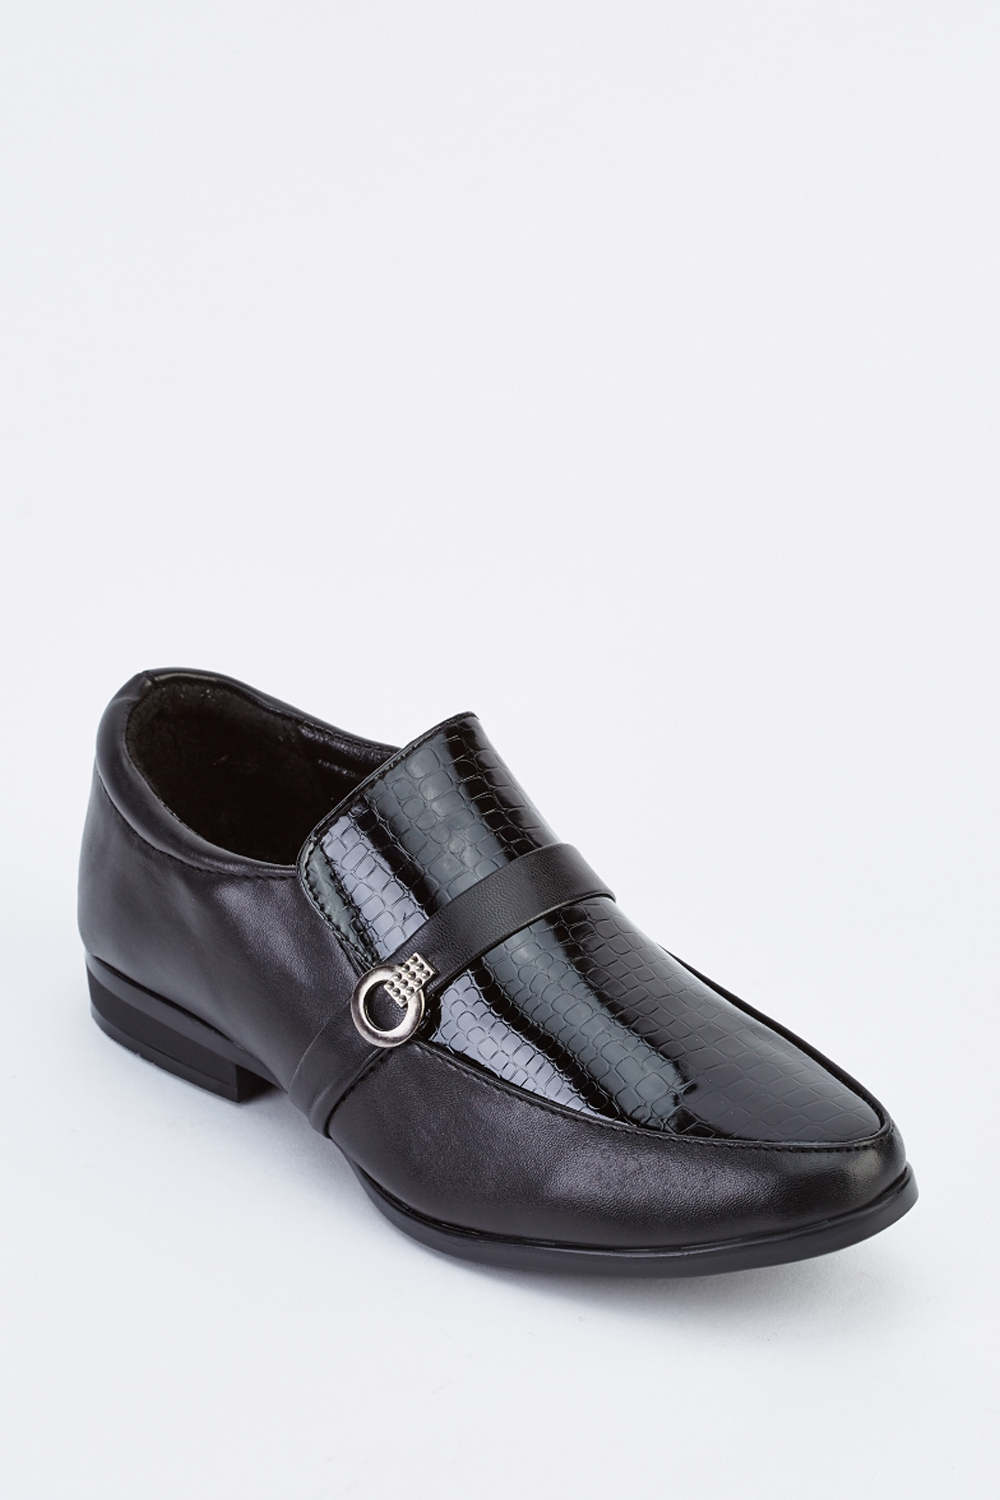 Download Mock Croc Front Shoes - Black - Just £5